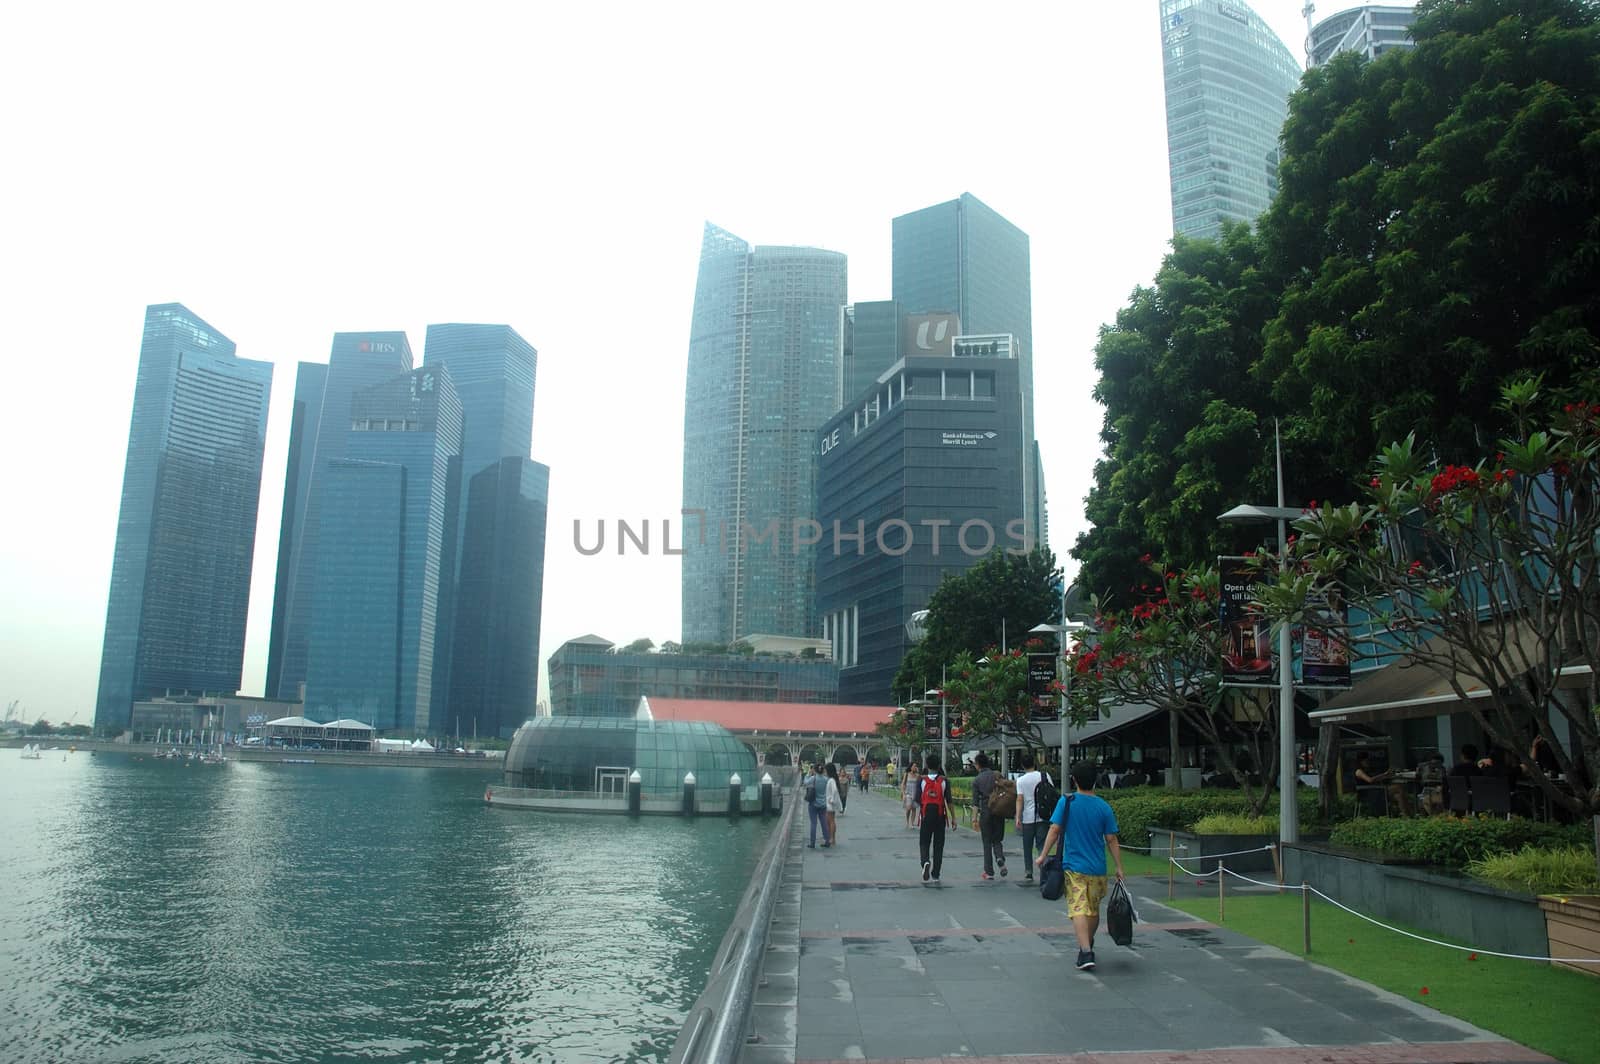 One Fullerton, Singapore - April 14, 2013: Skycraper building in One Fullerton area, Singapore.